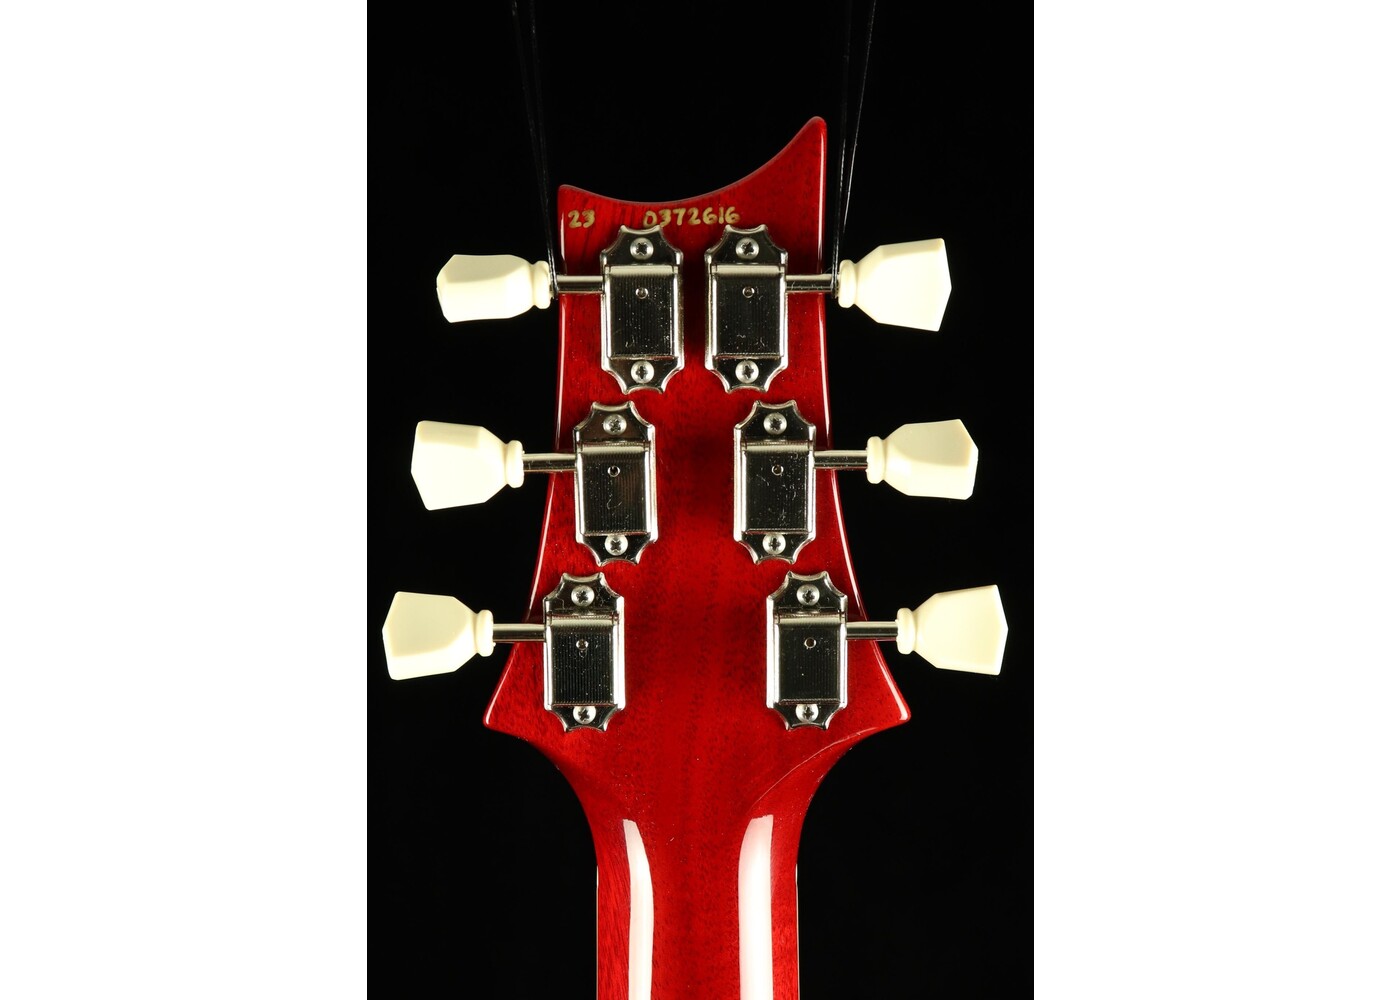 PRS Guitars PRS McCarty 594 Singlecut Electric Guitar - Cherry Wrap Burst